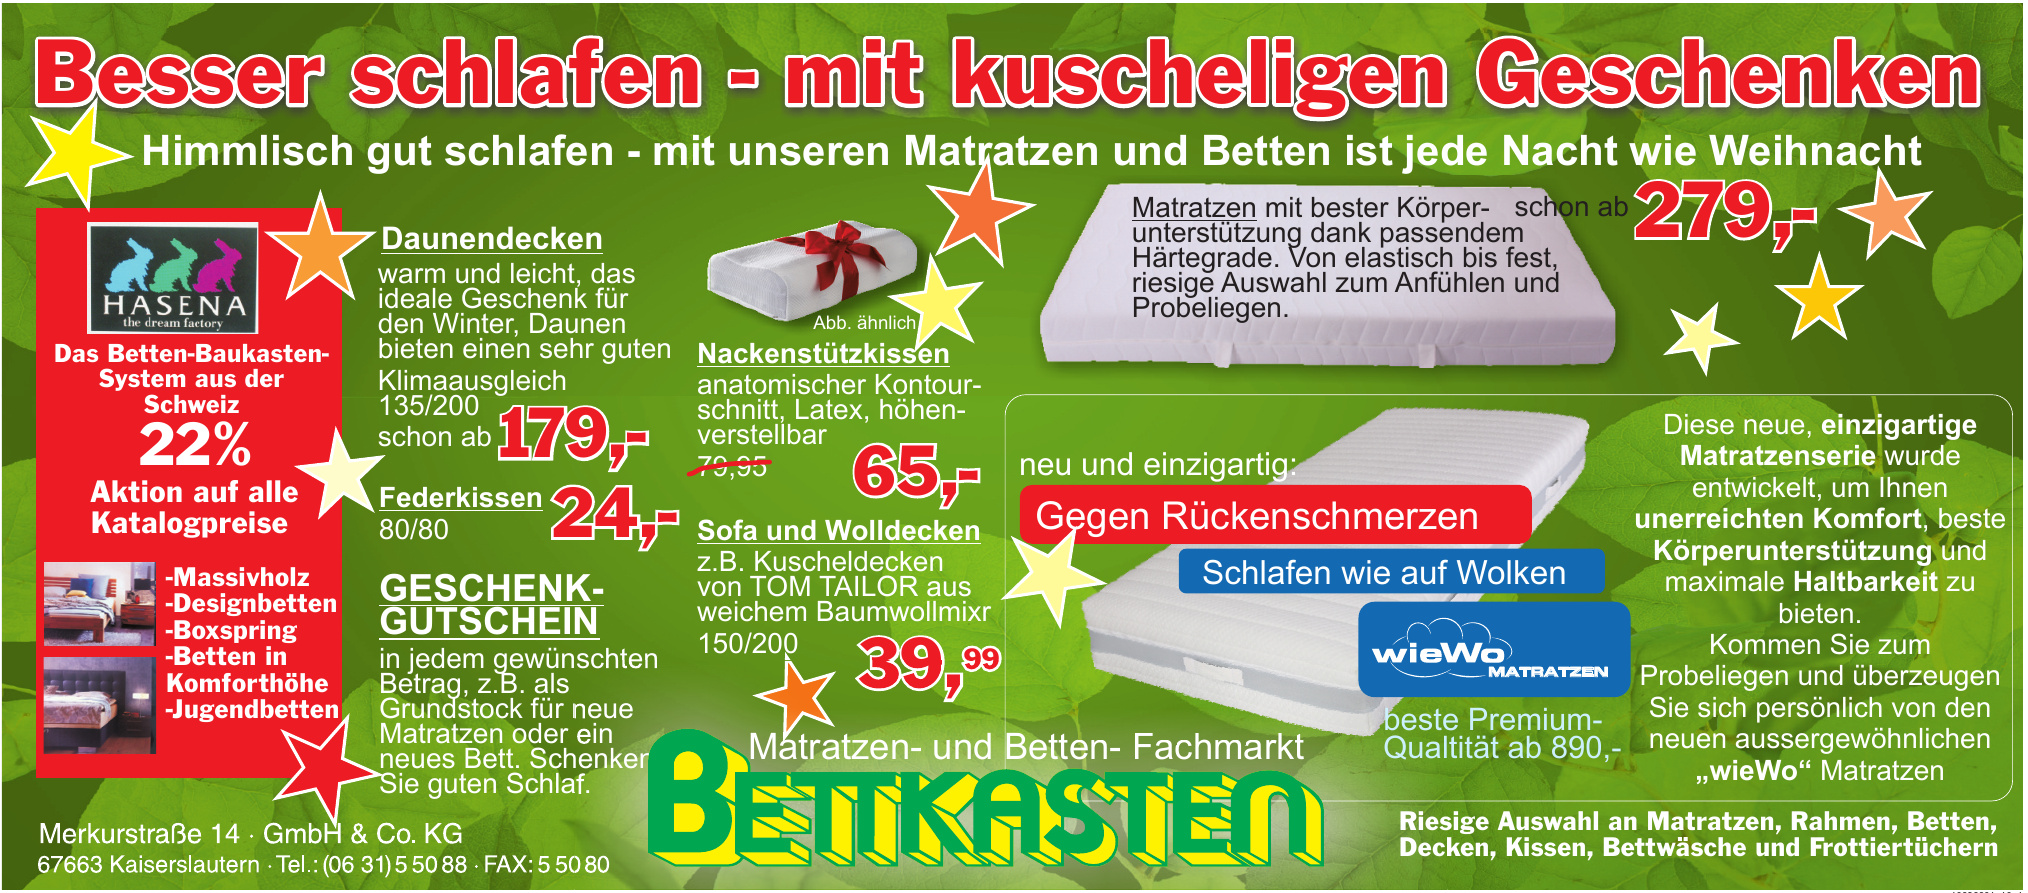 Matratzen- und Betten- Fachmarkt Bettkasten GmbH & Co. KG